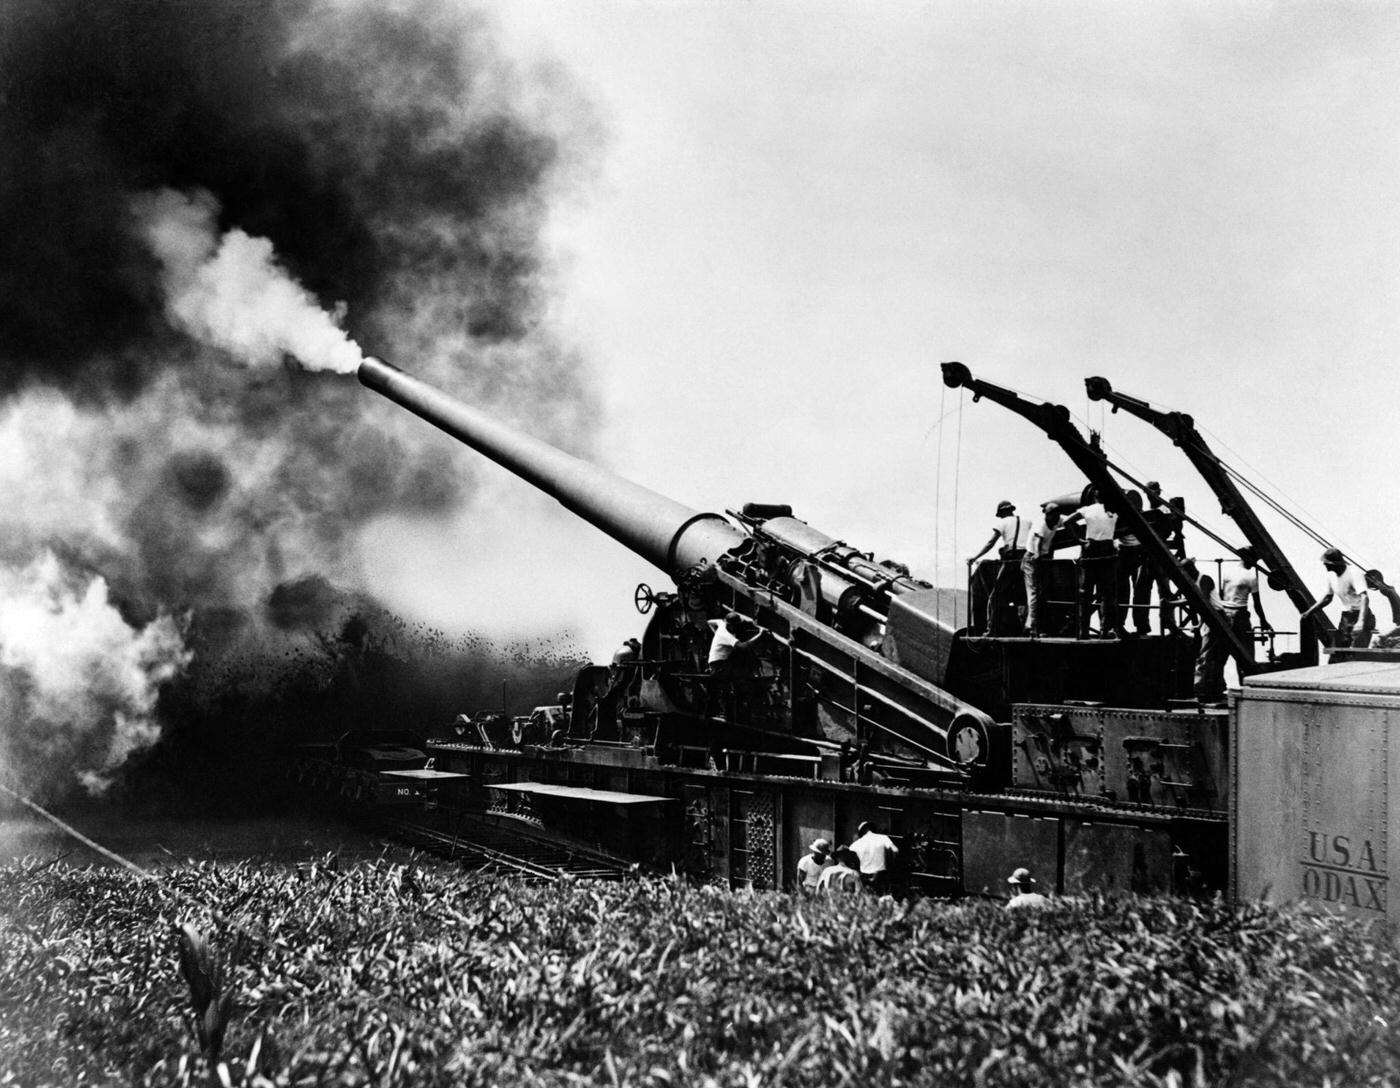 Big artillery railroad gun firing during World War II in the 1940s.